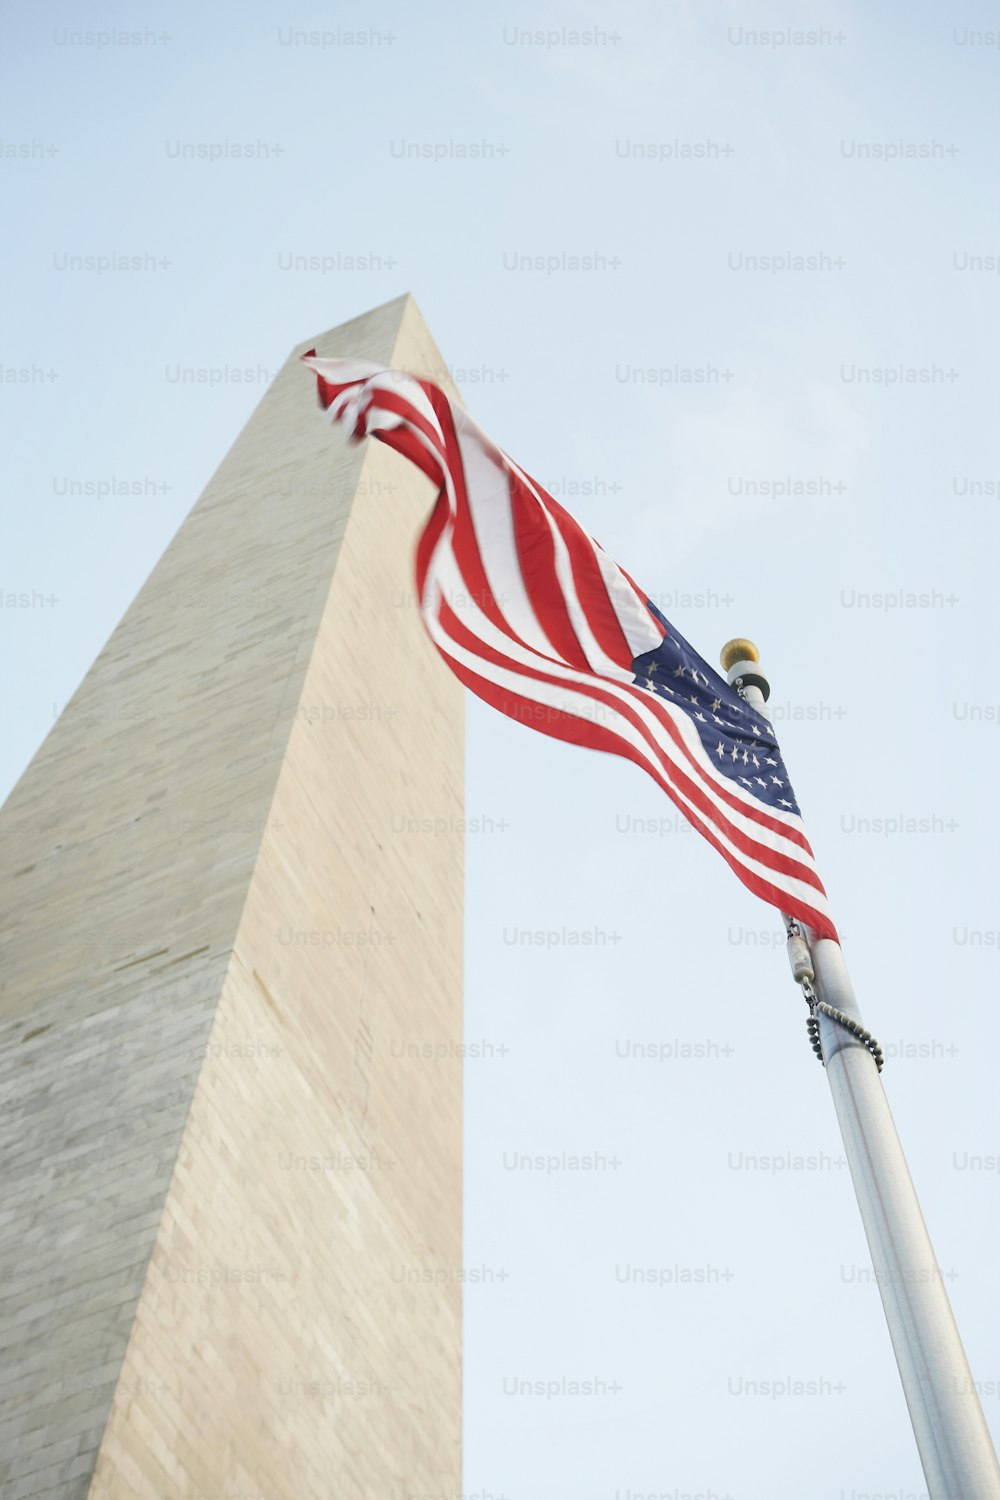 Una bandera estadounidense ondeando frente al monumento a Washington